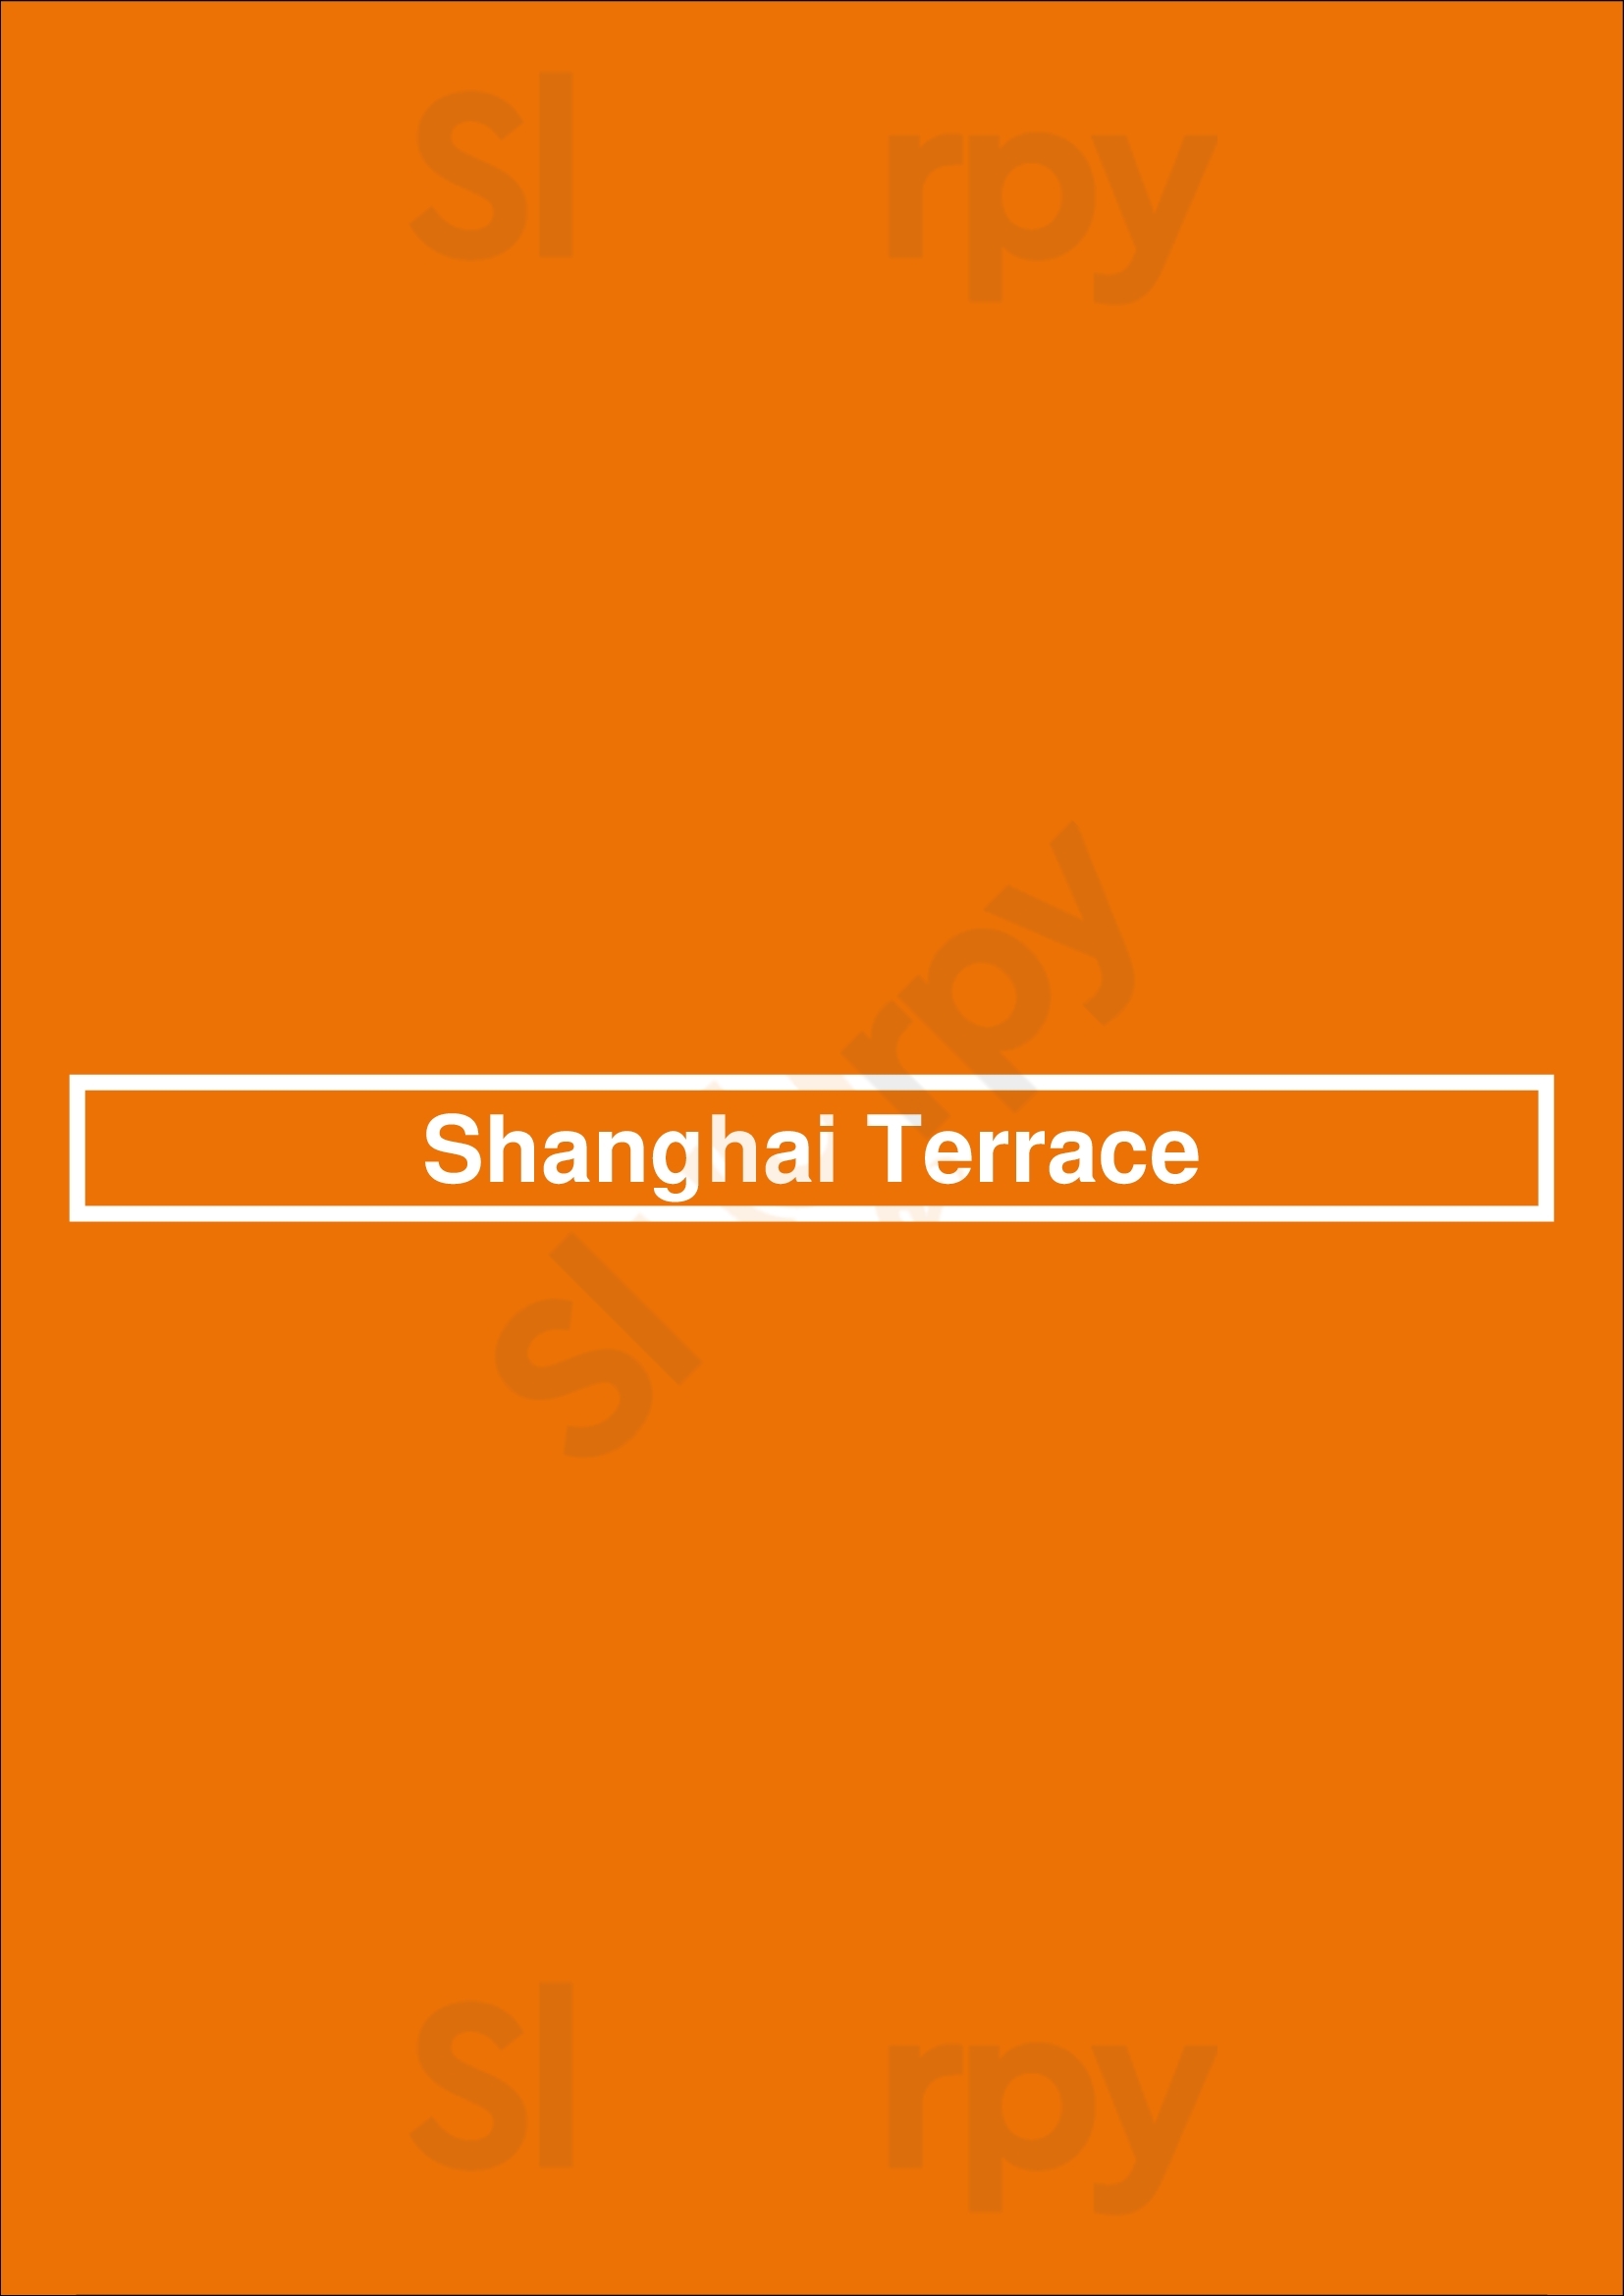 Shanghai Terrace Chicago Menu - 1